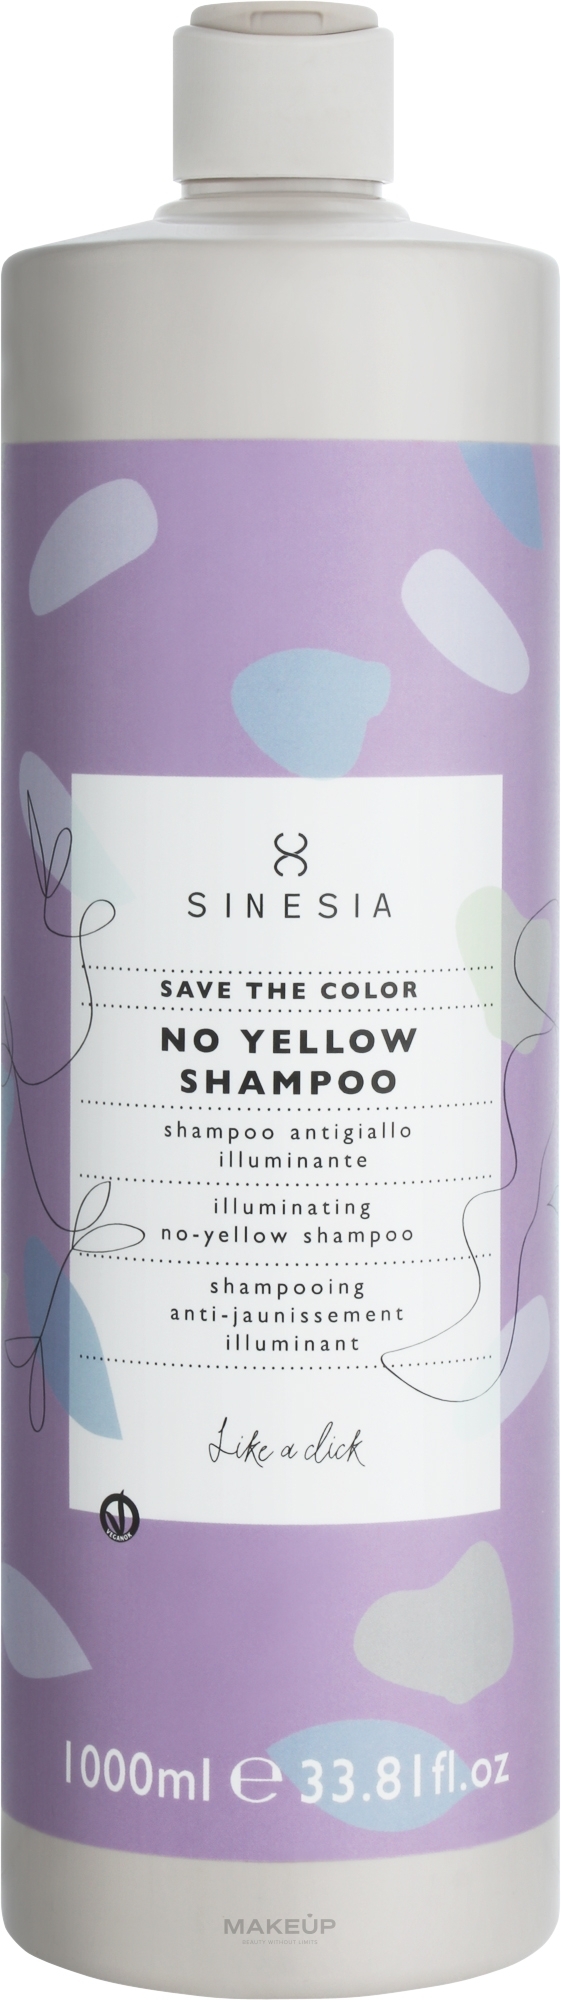 Шампунь от желтизны с эффектом блеска - Sinesia Save The Color No Yellow Shampoo  — фото 1000ml